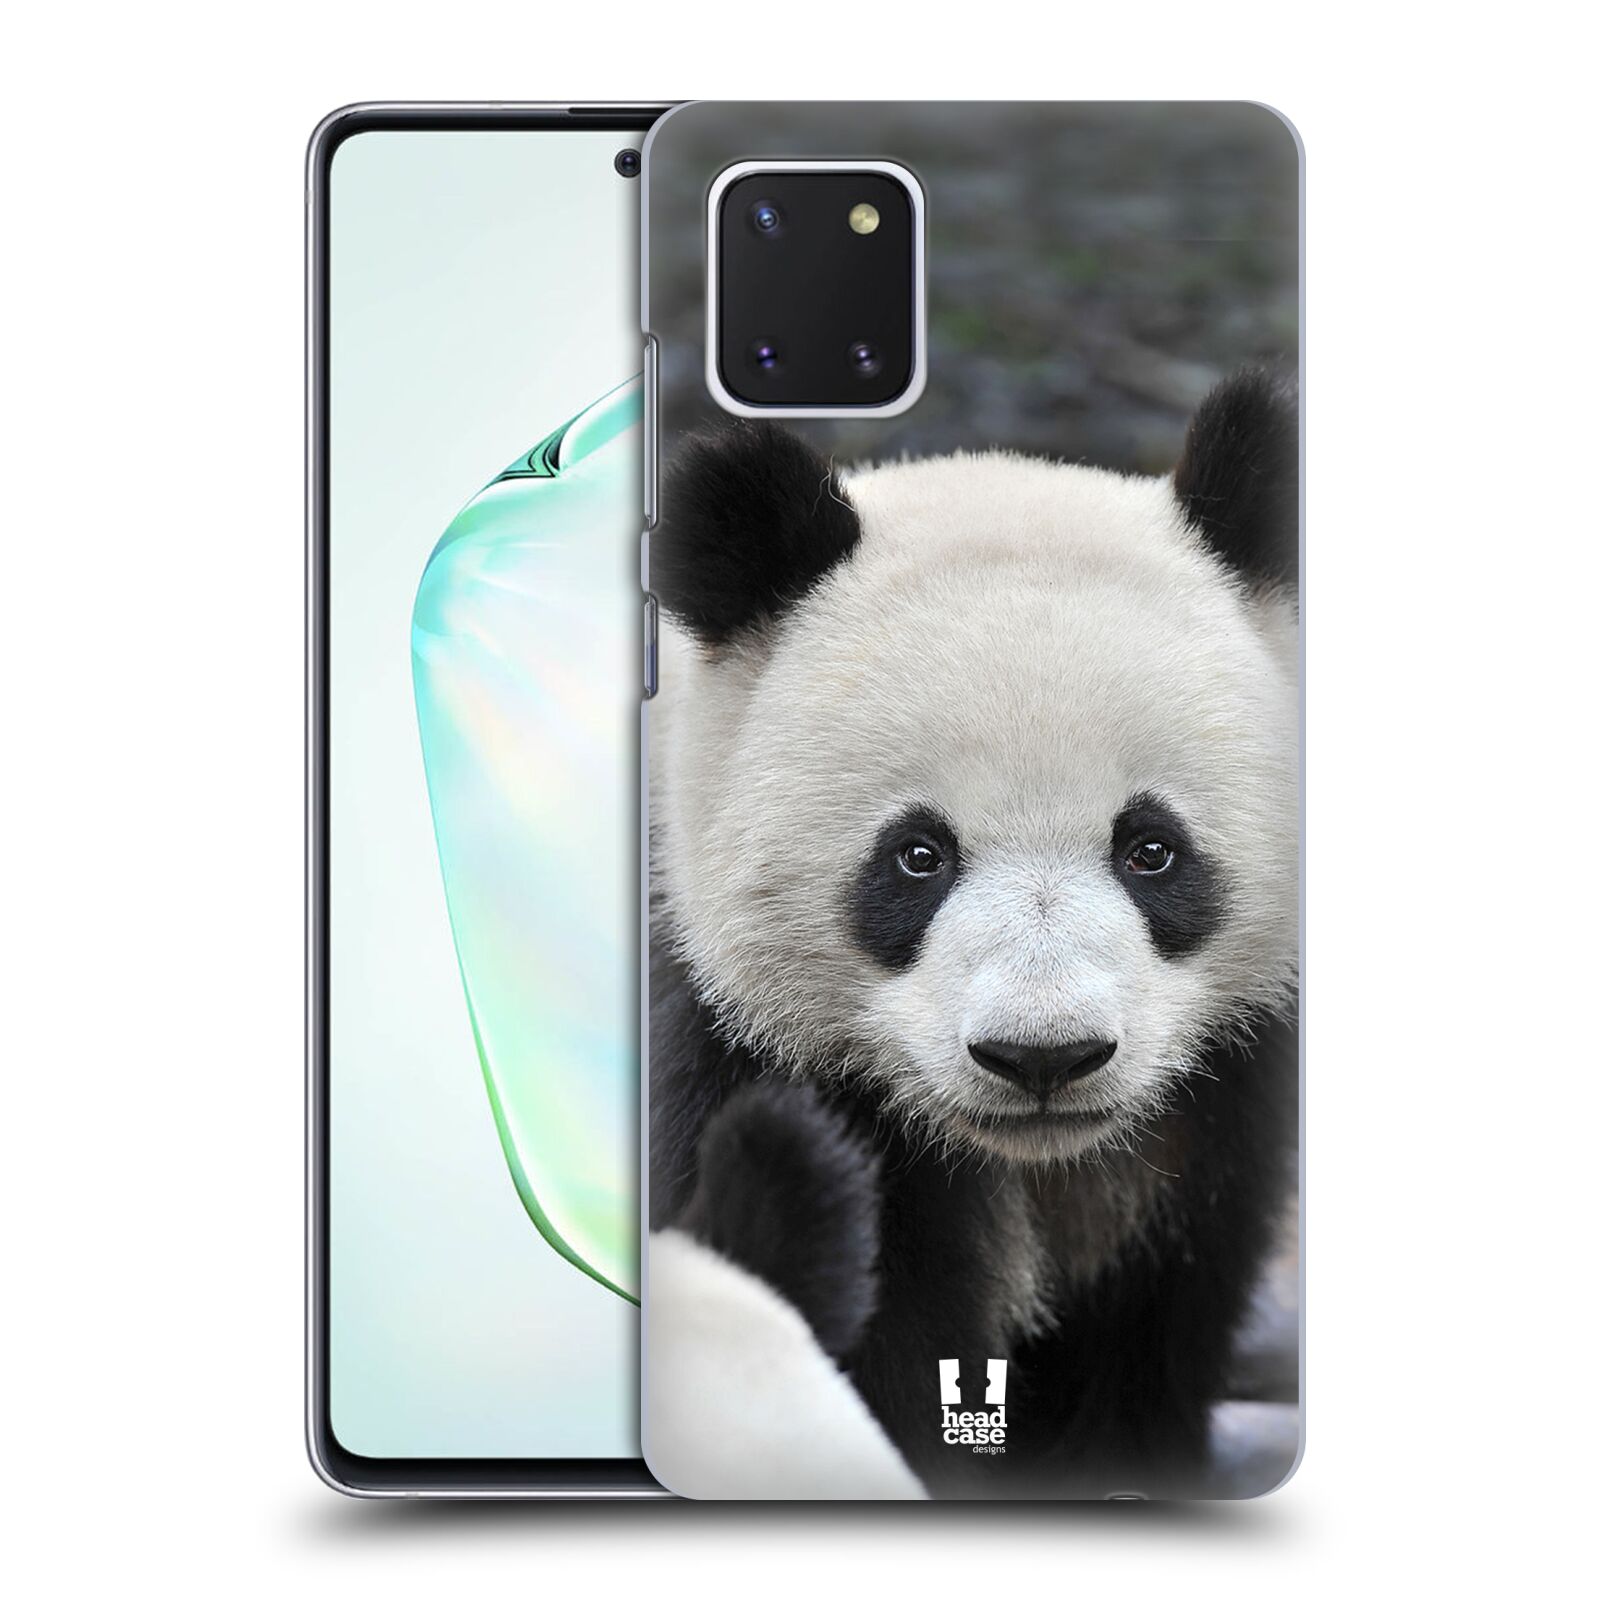 Zadní obal pro mobil Samsung Galaxy Note 10 Lite - HEAD CASE - Svět zvířat medvěd panda